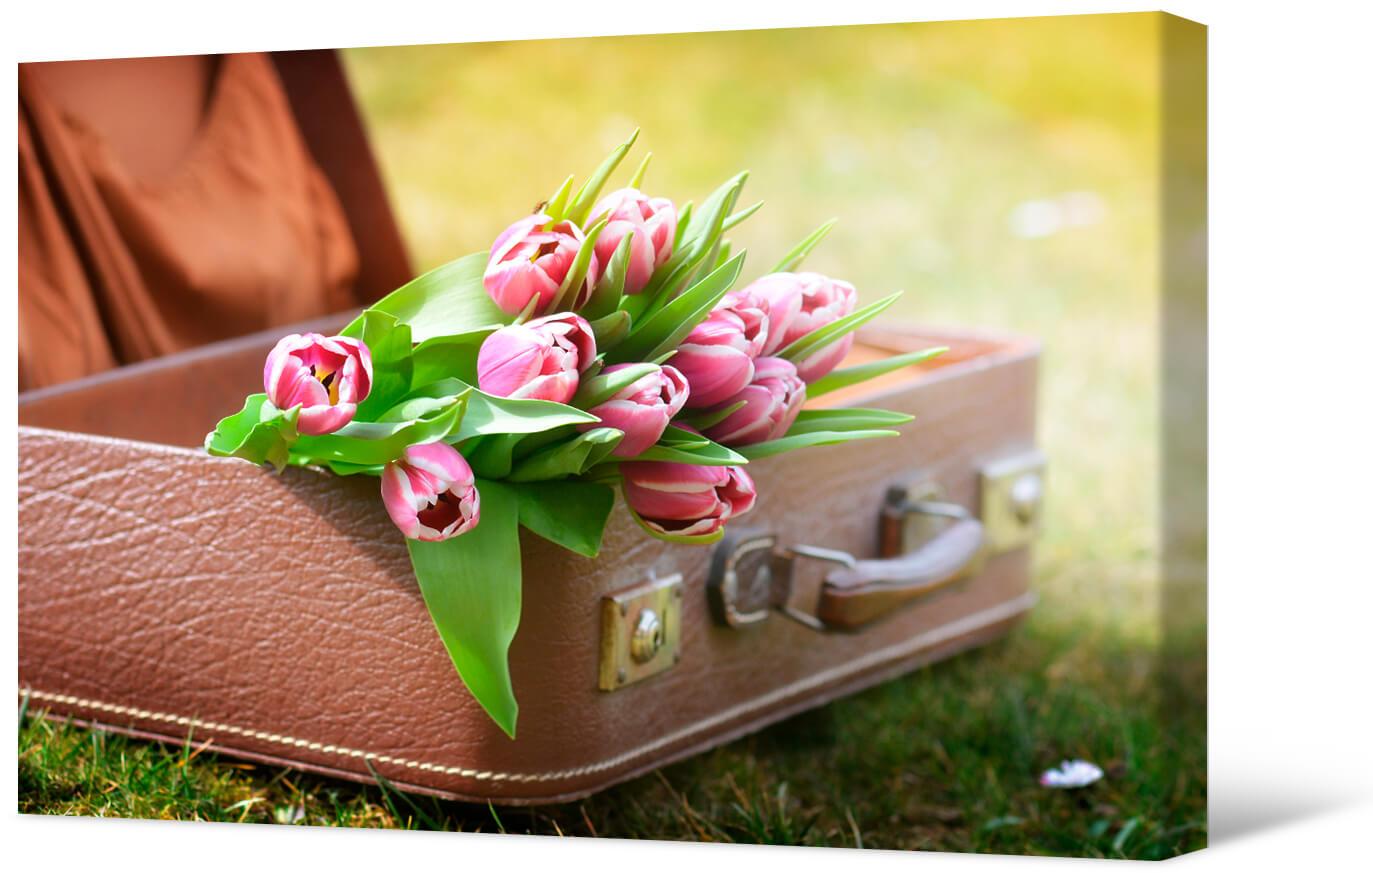 Bild Tulpen in einem Koffer